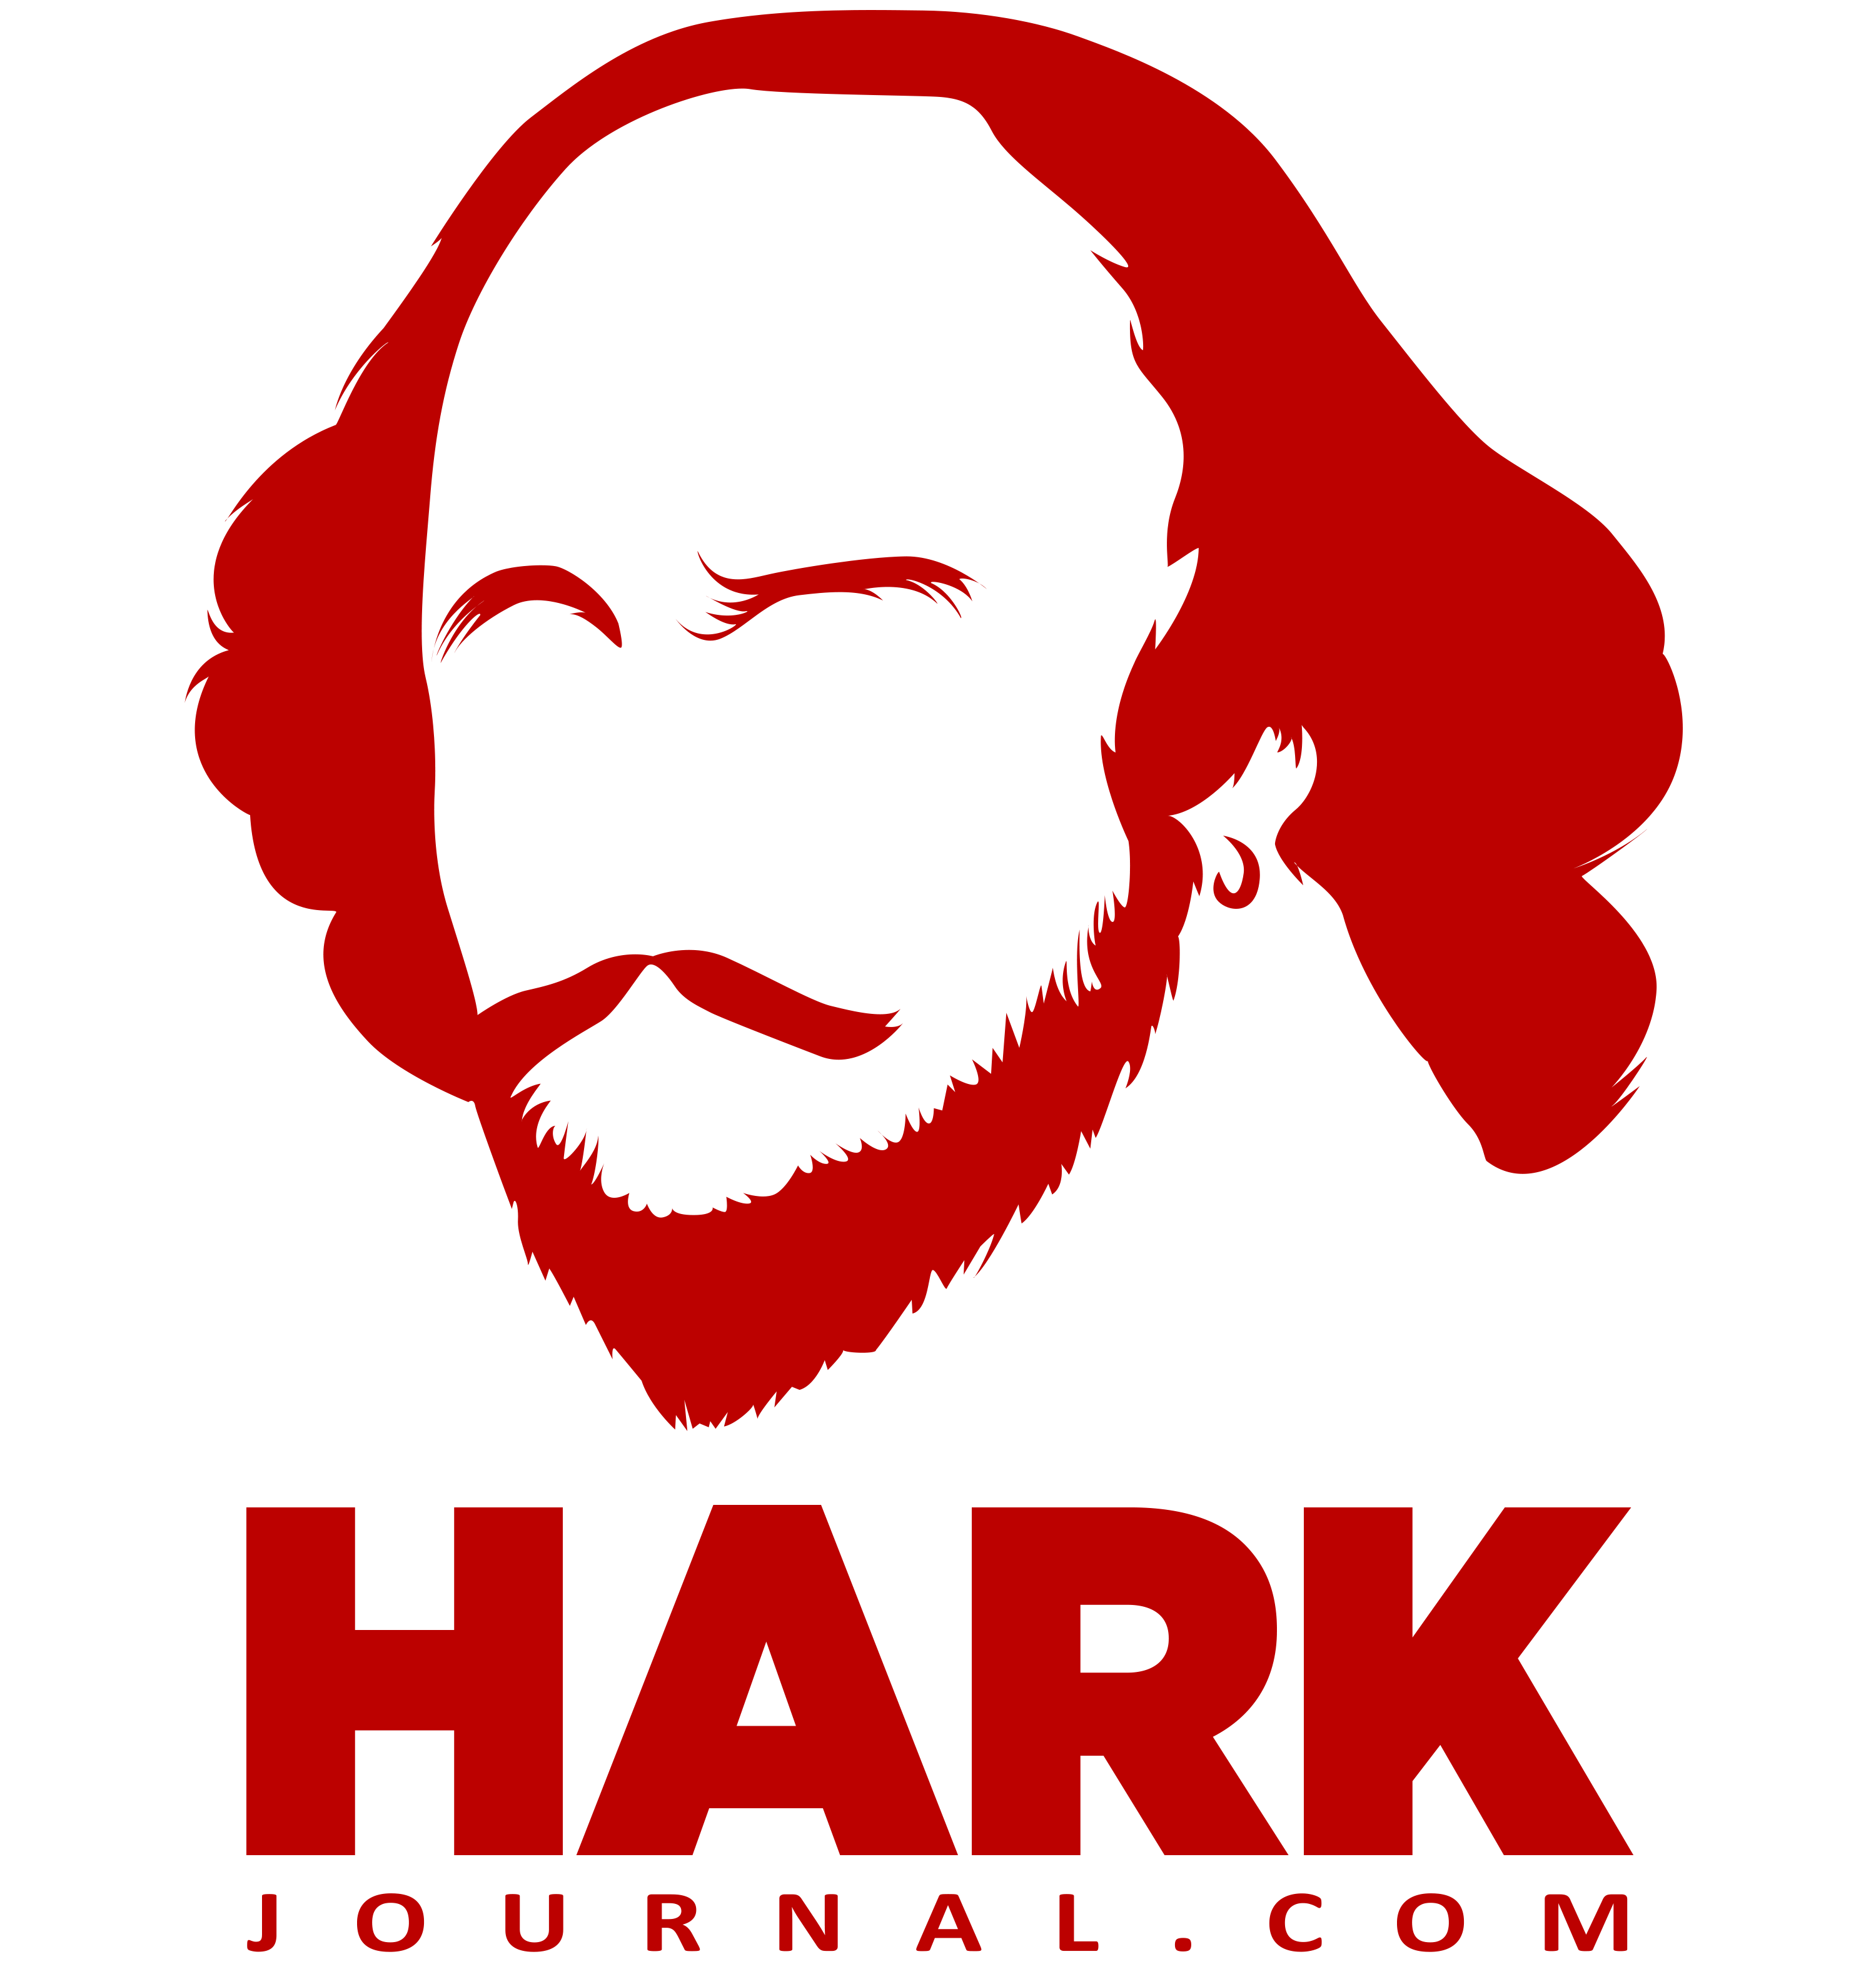 The HARK Journal